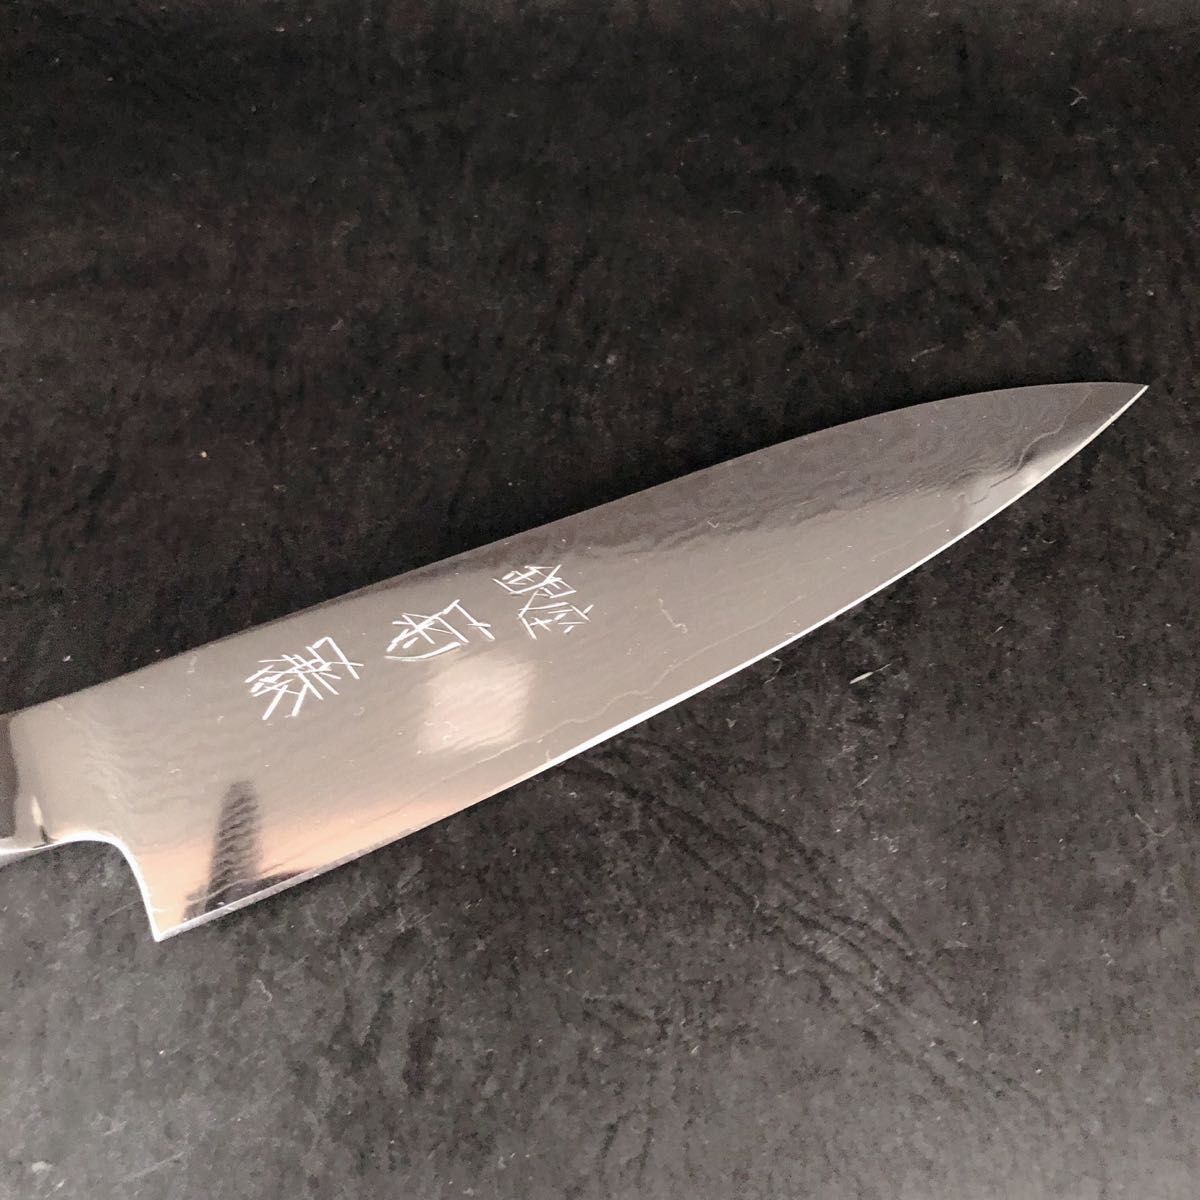 銀座菊藤 特選 ペティーナイフ丸柄型 130ミリ V金10号多層鋼